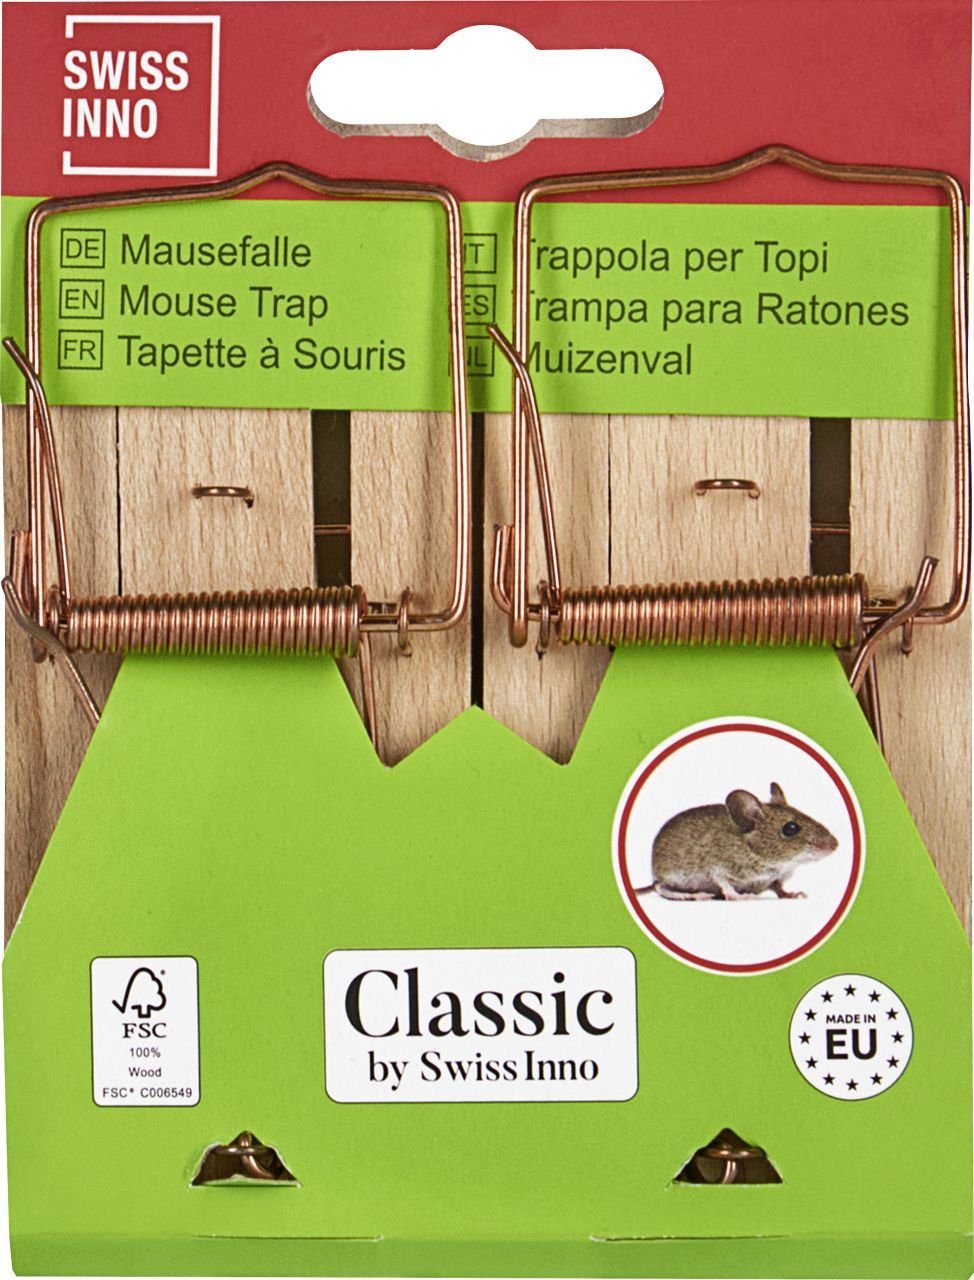 Swissinno Swissinno Insektenvernichtungsmittel FSC zertifiziert Holz-Mausefalle Classic